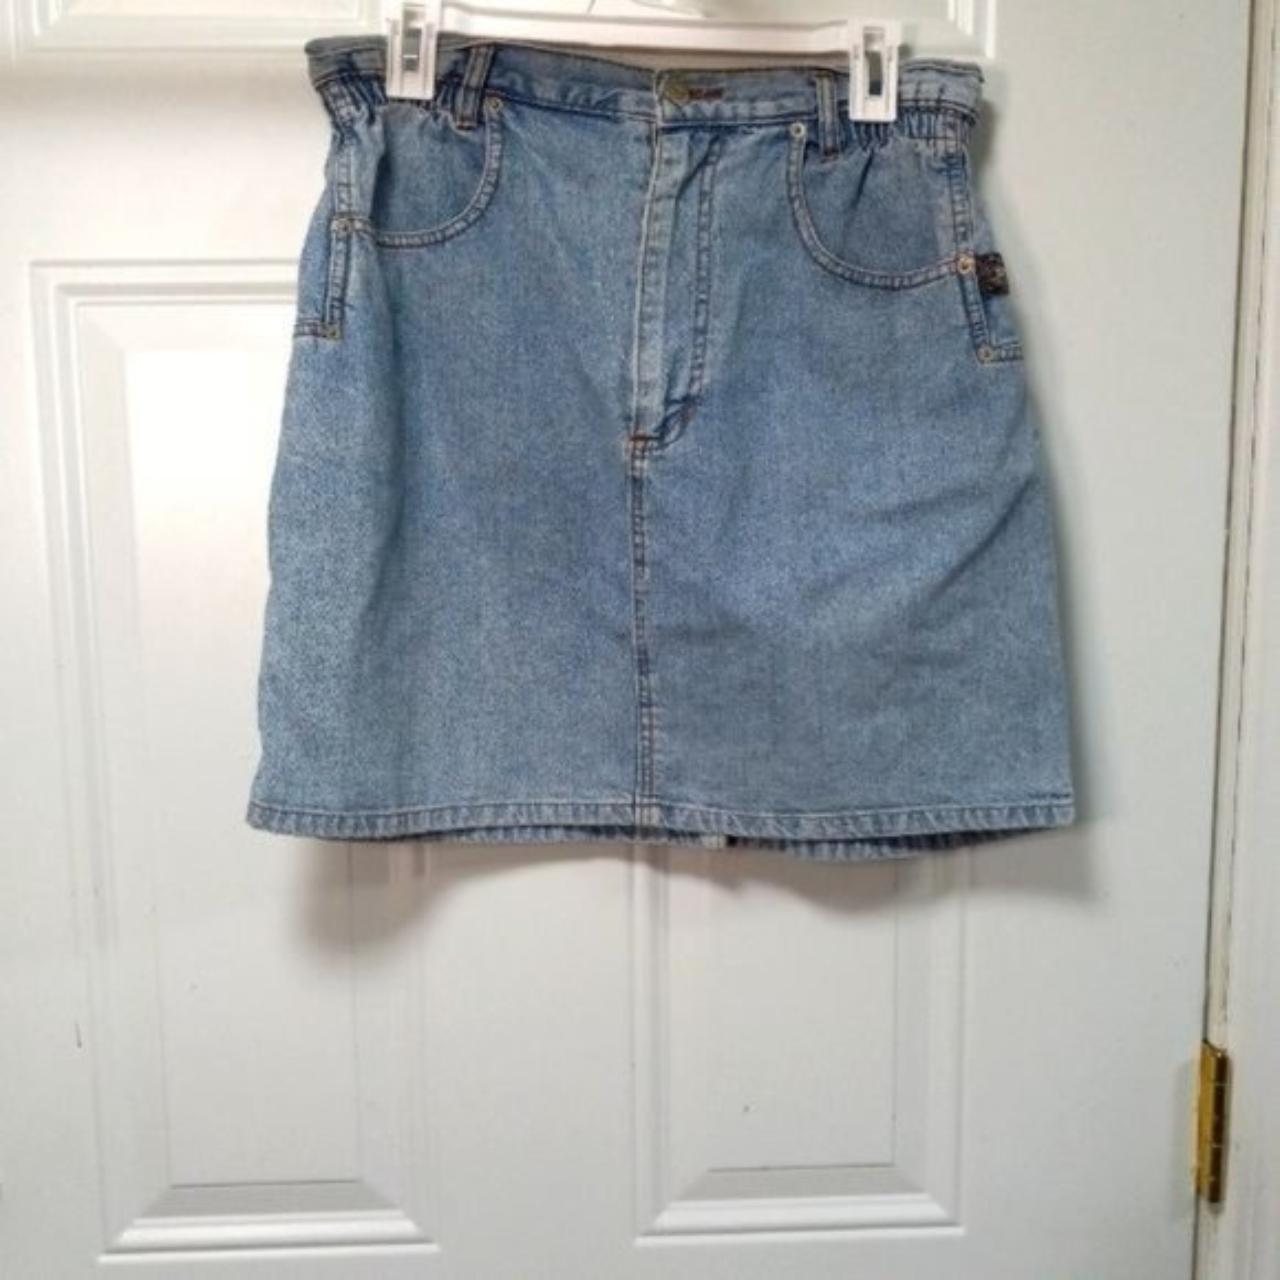 Product Image 1 - VINTAGE Best Denim Jean Skirt
Size